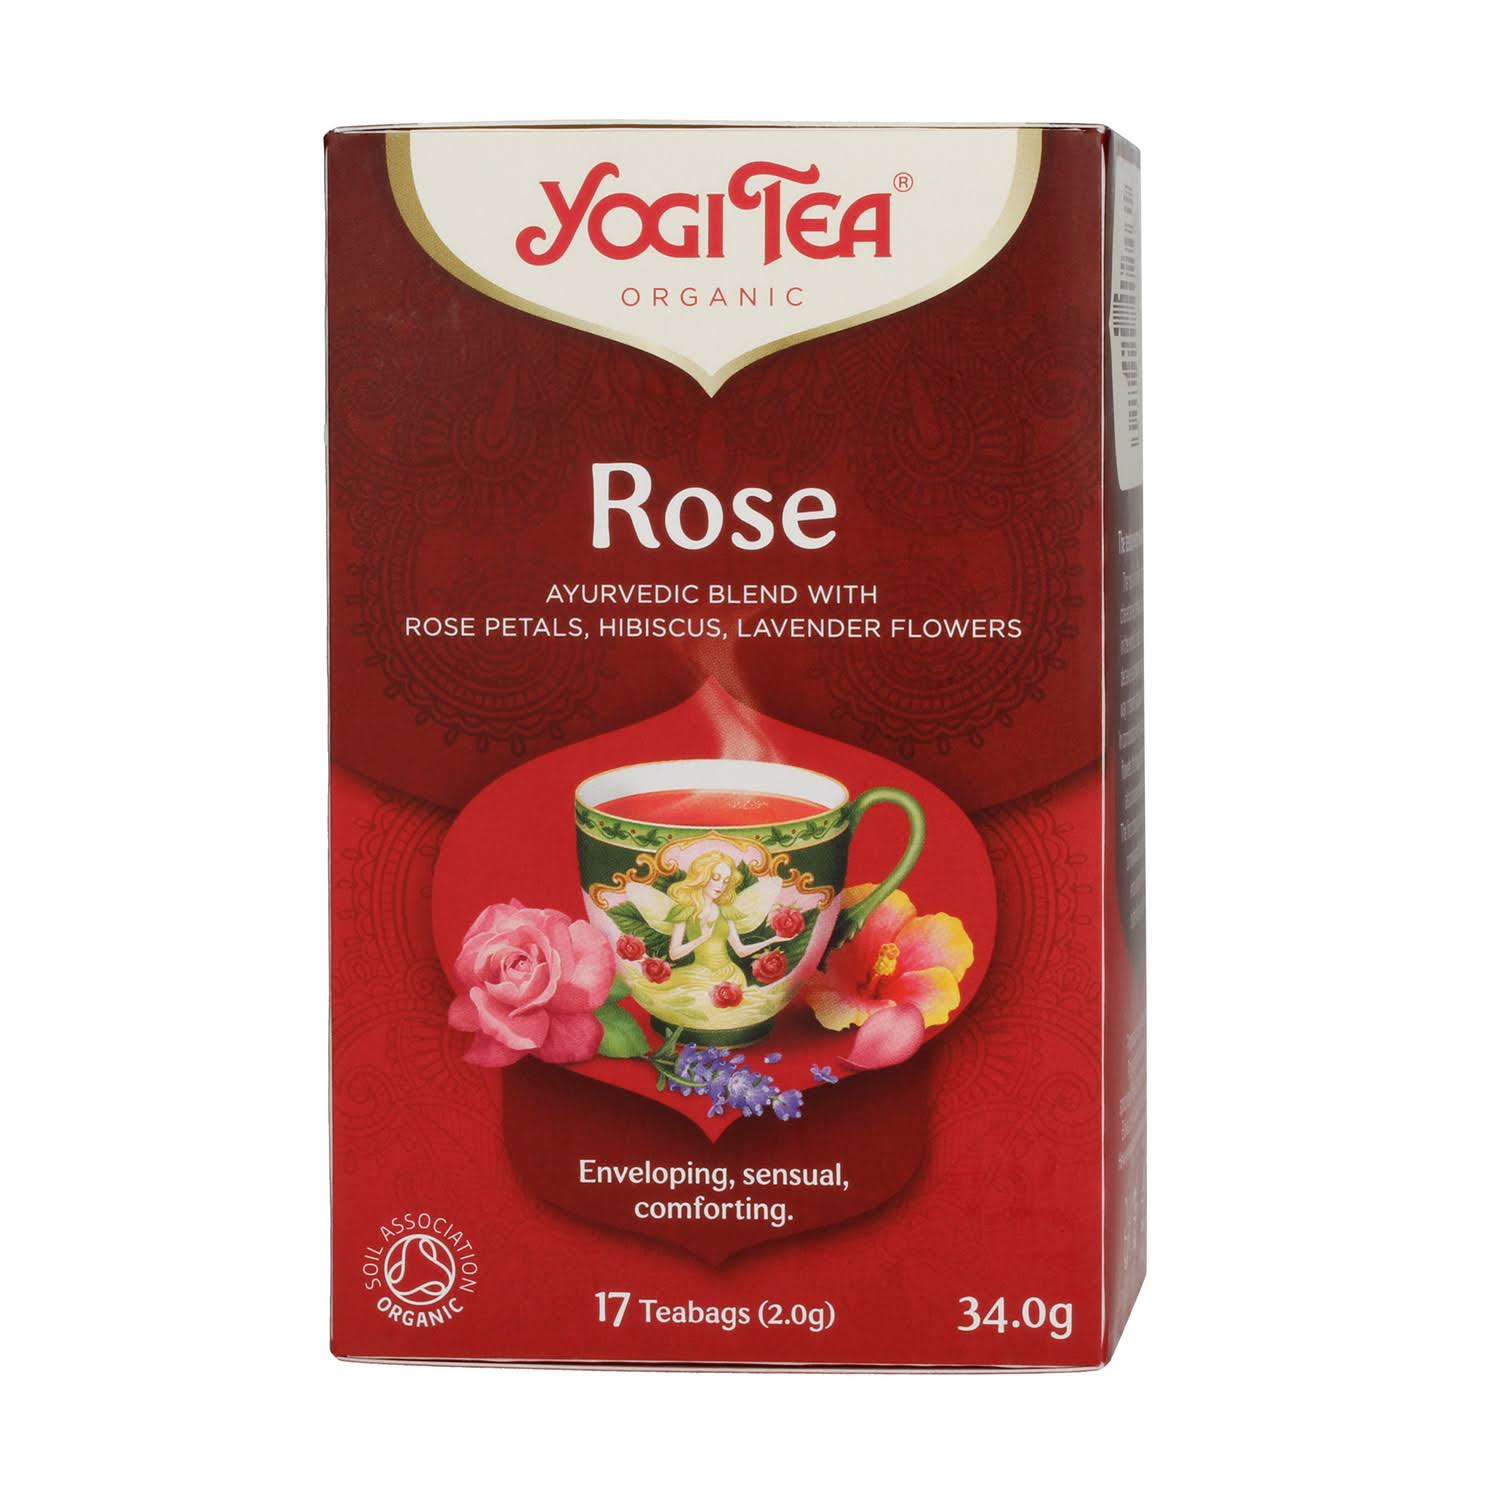 Yogi Tea Organic Rose Tea 17 Tea Bags - 34g